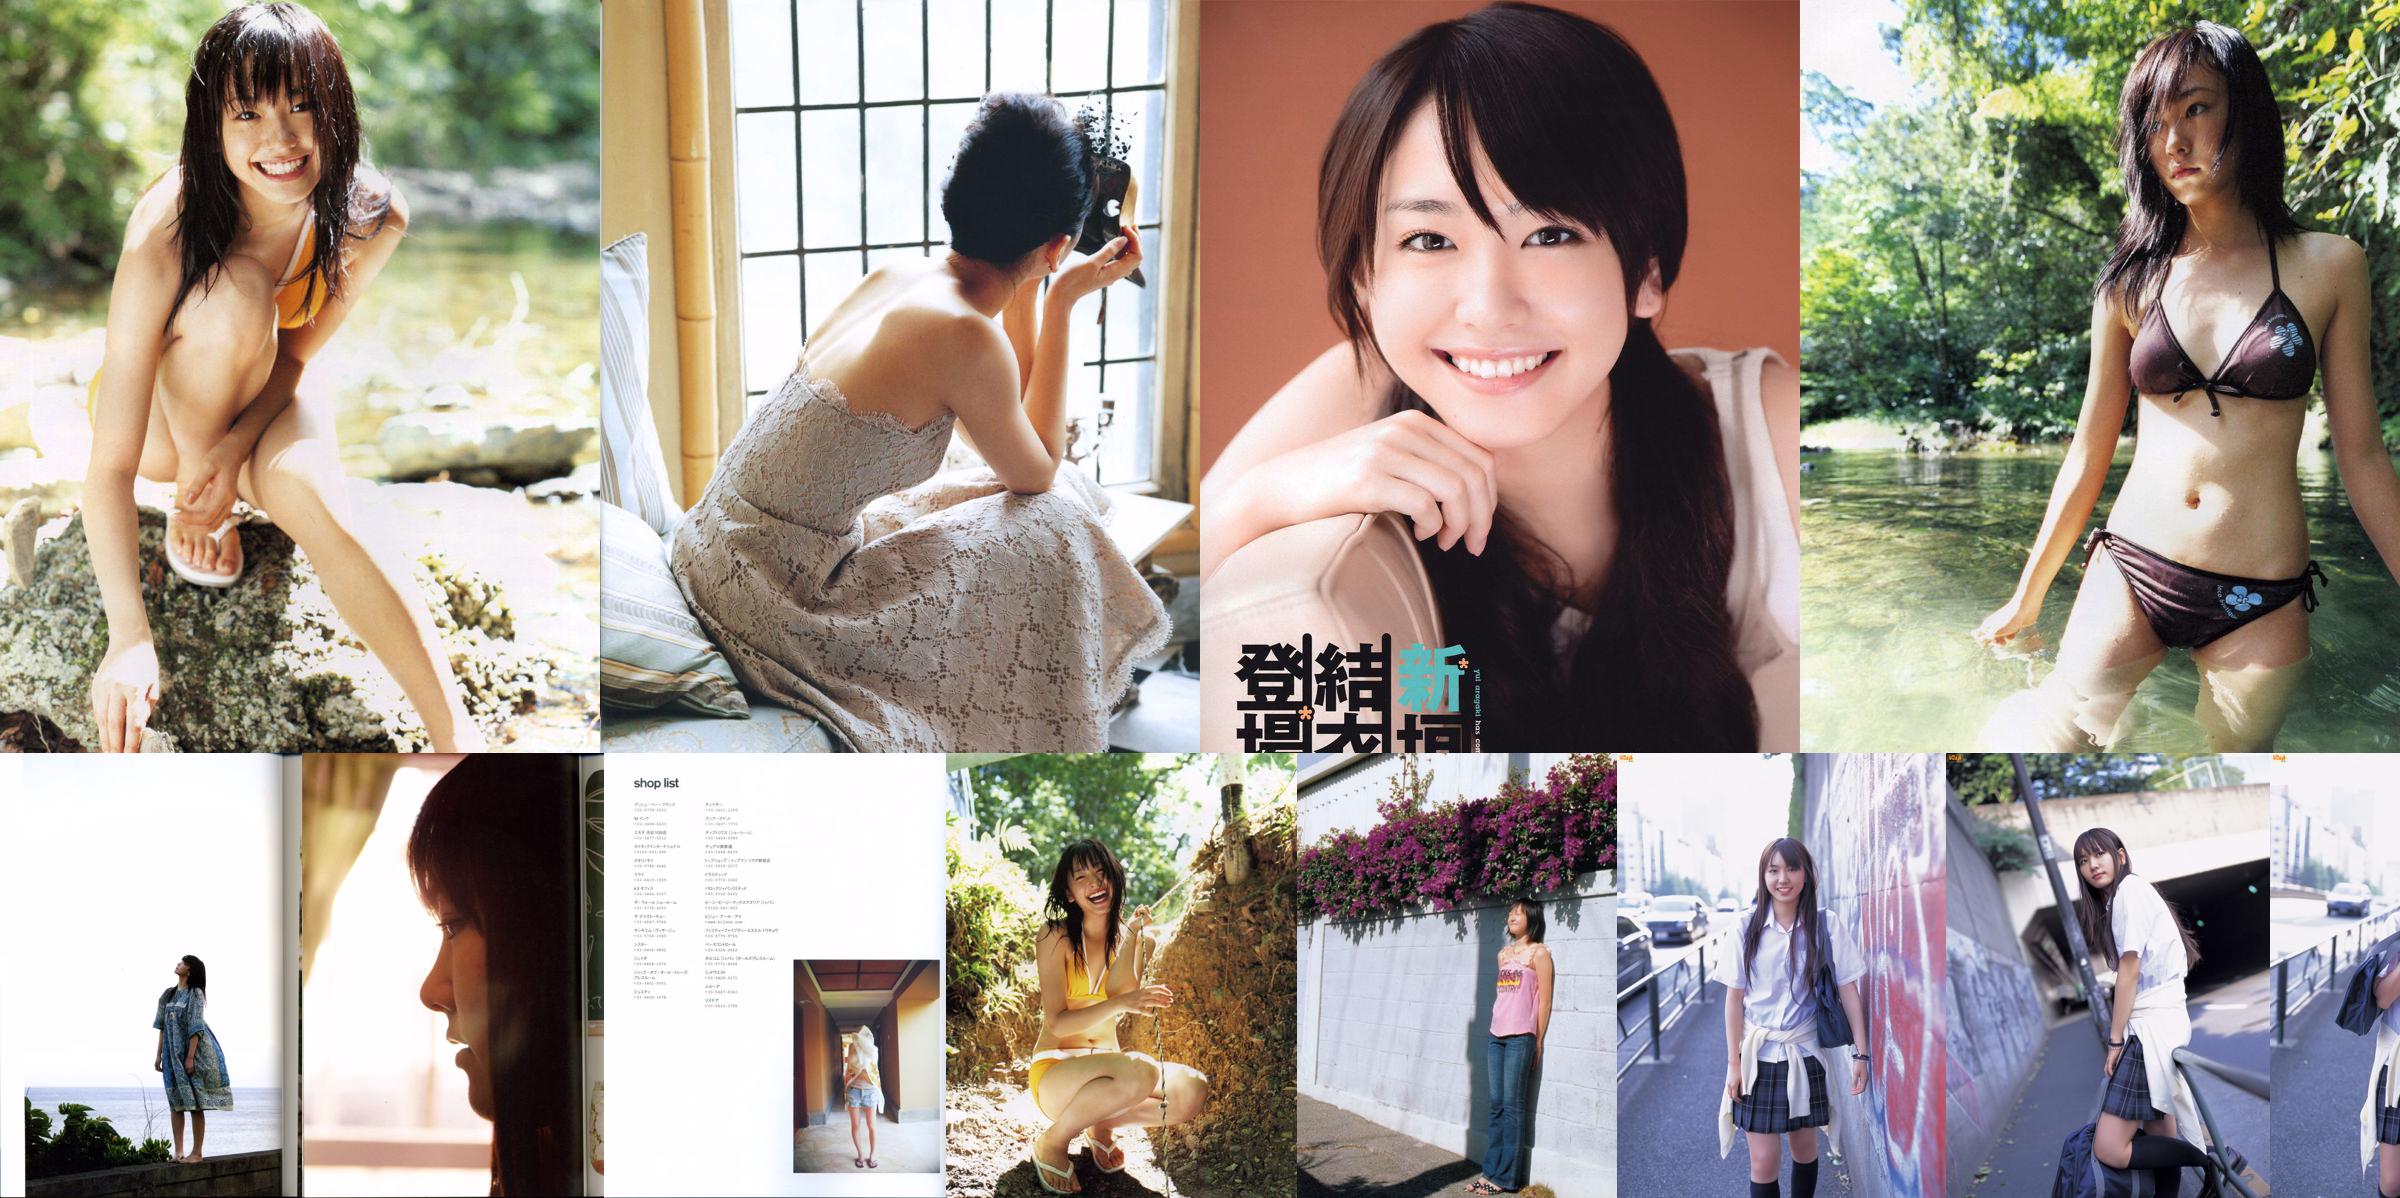 Yui Aragaki "Tạp chí ảnh thời trang 2012" No.8799b4 Trang 5